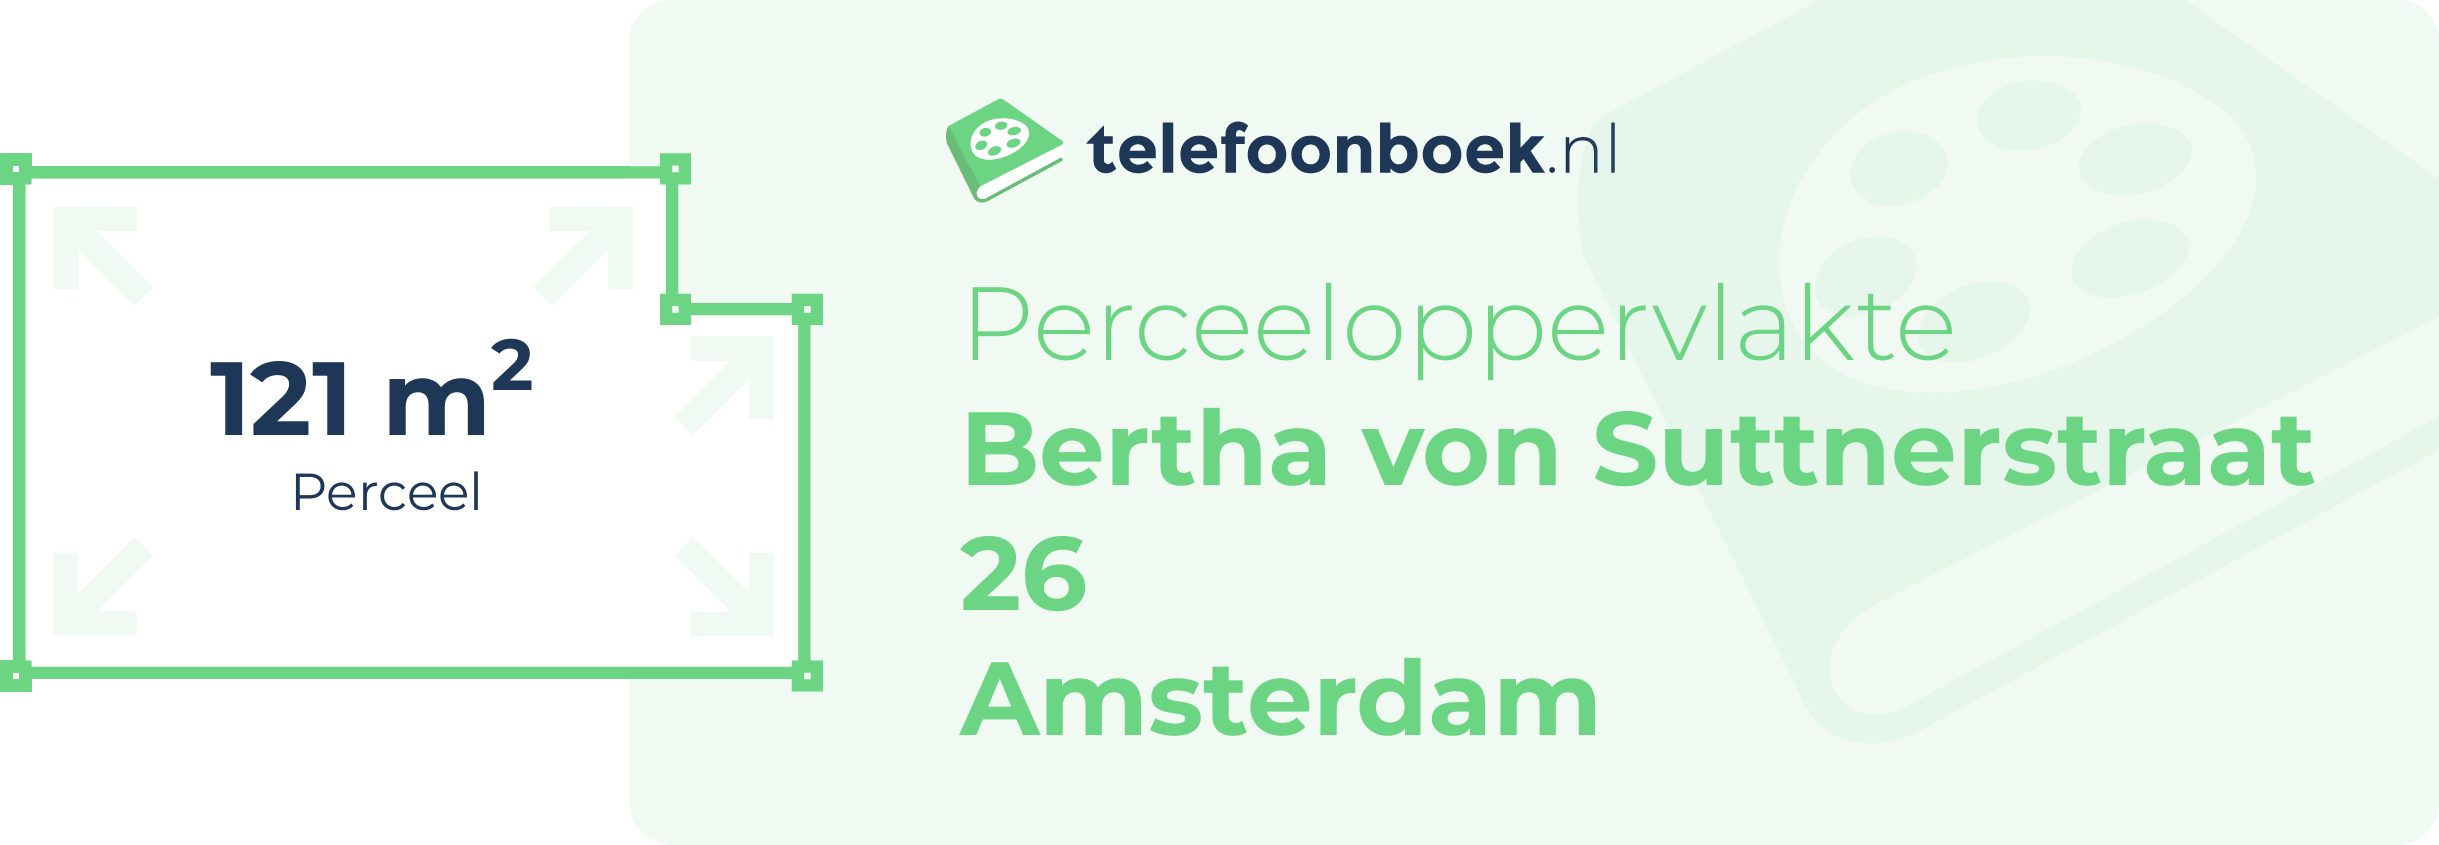 Perceeloppervlakte Bertha Von Suttnerstraat 26 Amsterdam